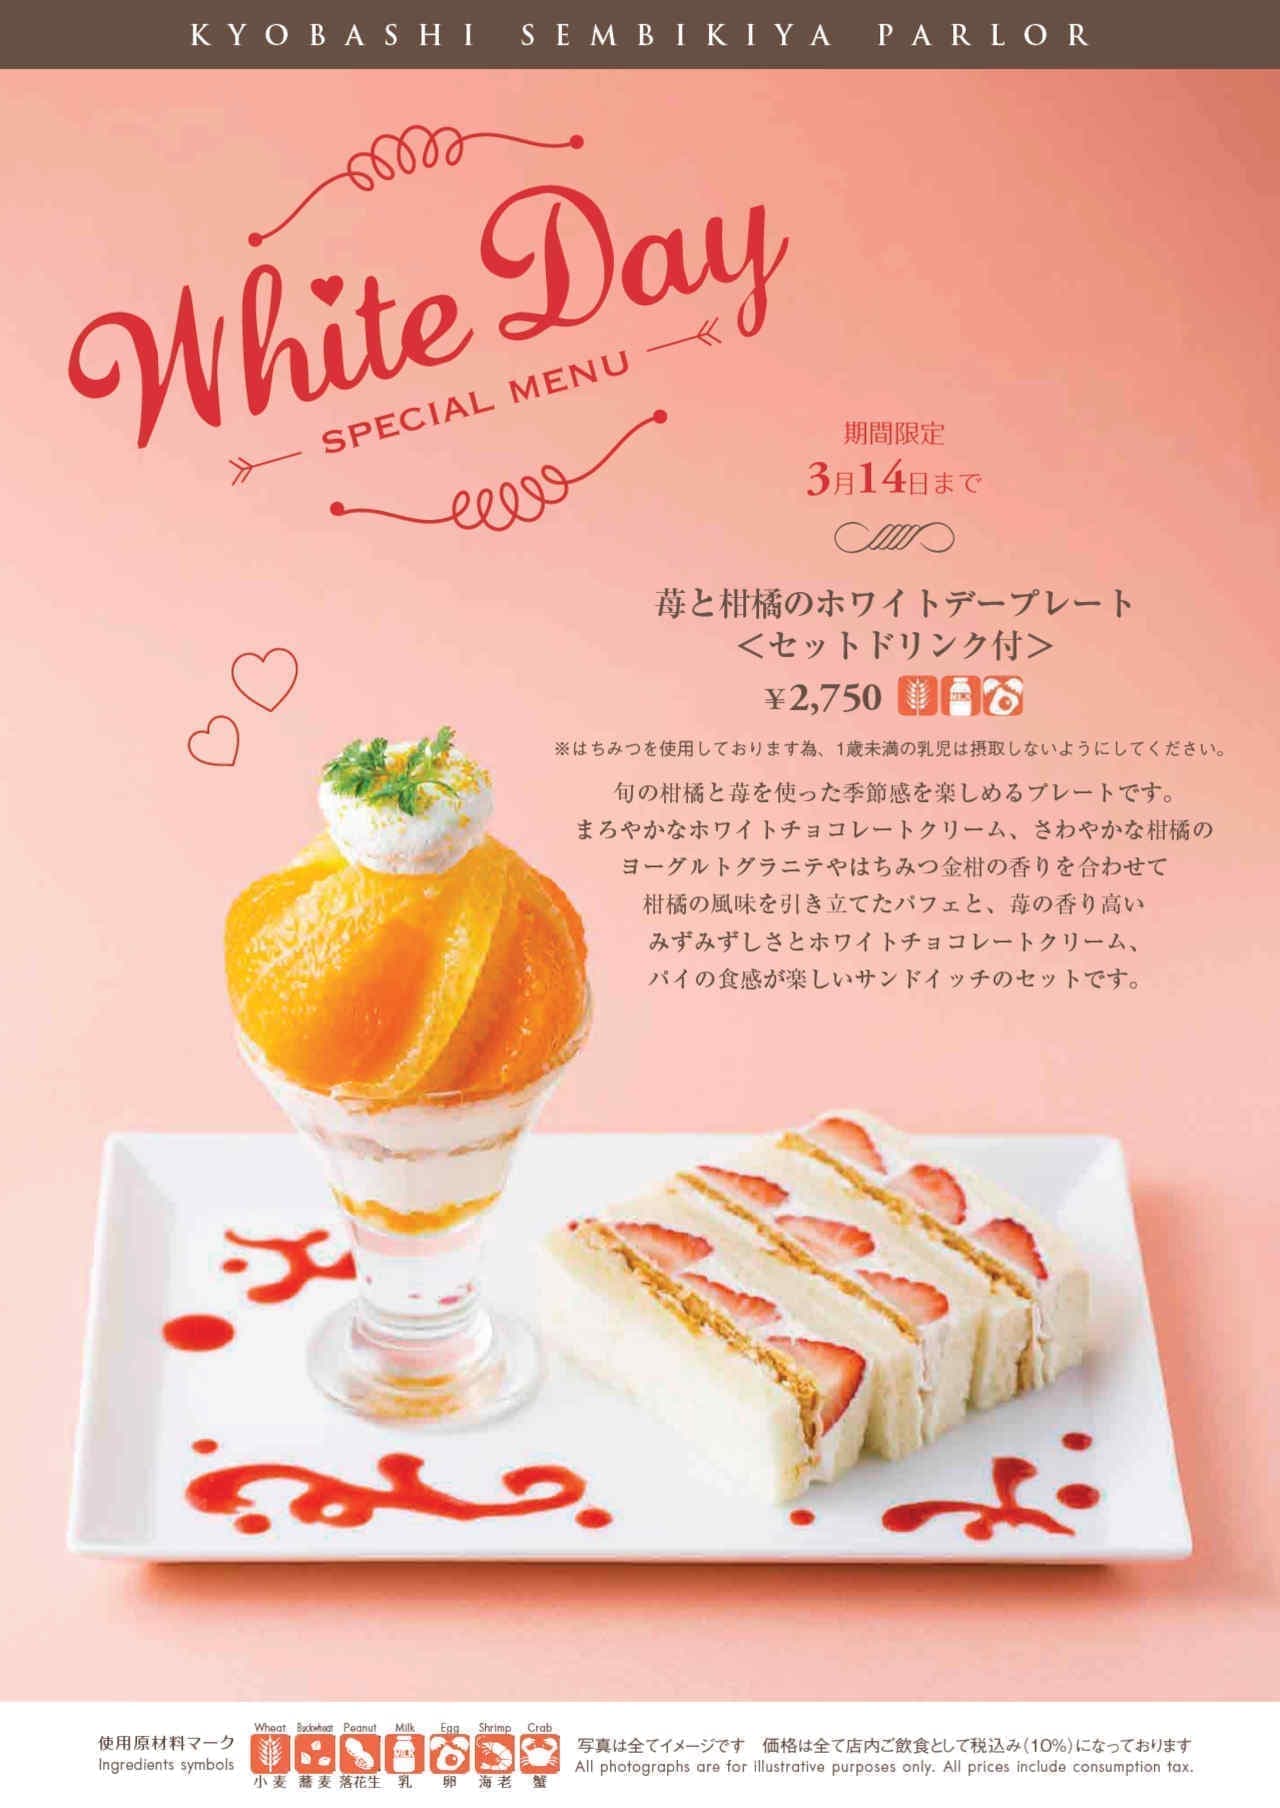 Kyobashi Senbiya "Strawberry and Citrus White Day Plate"